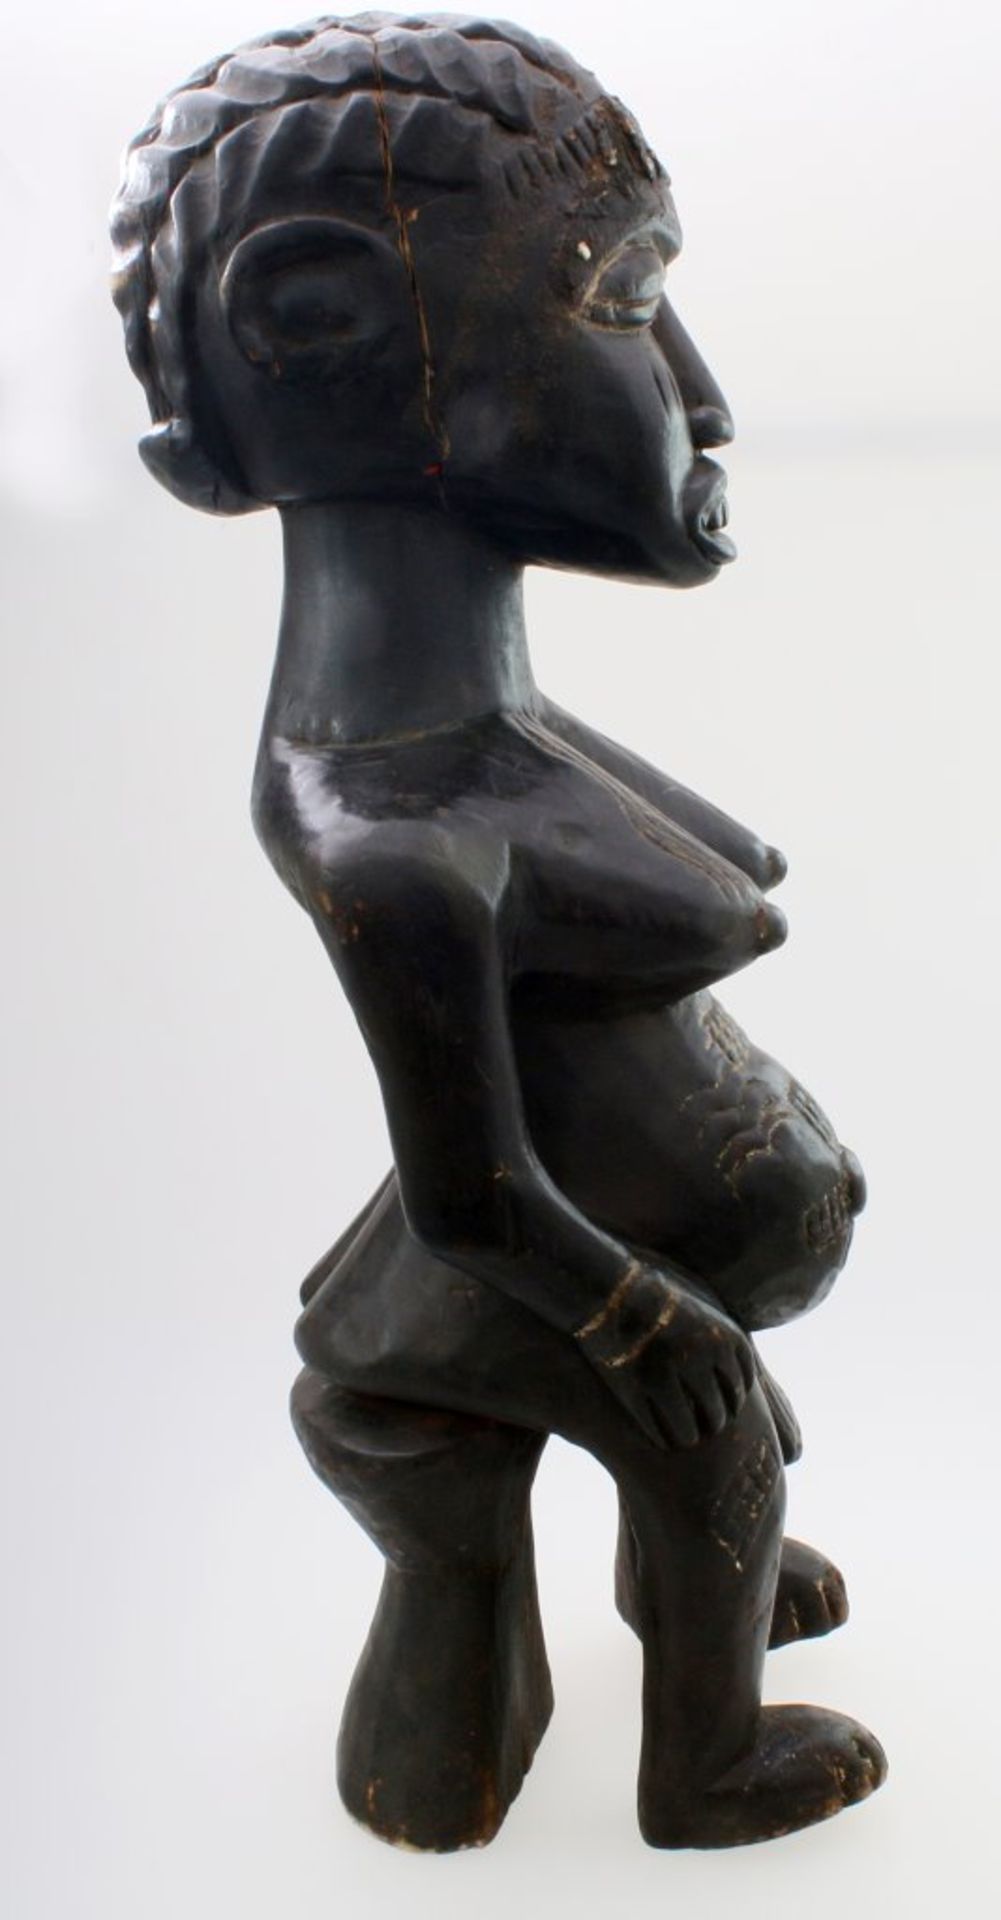 Westafrika - Große Ahnenfigur Schwarz / braun gefärbtes Tropenholz. Auf Stütze sitzende Figur, - Bild 4 aus 6